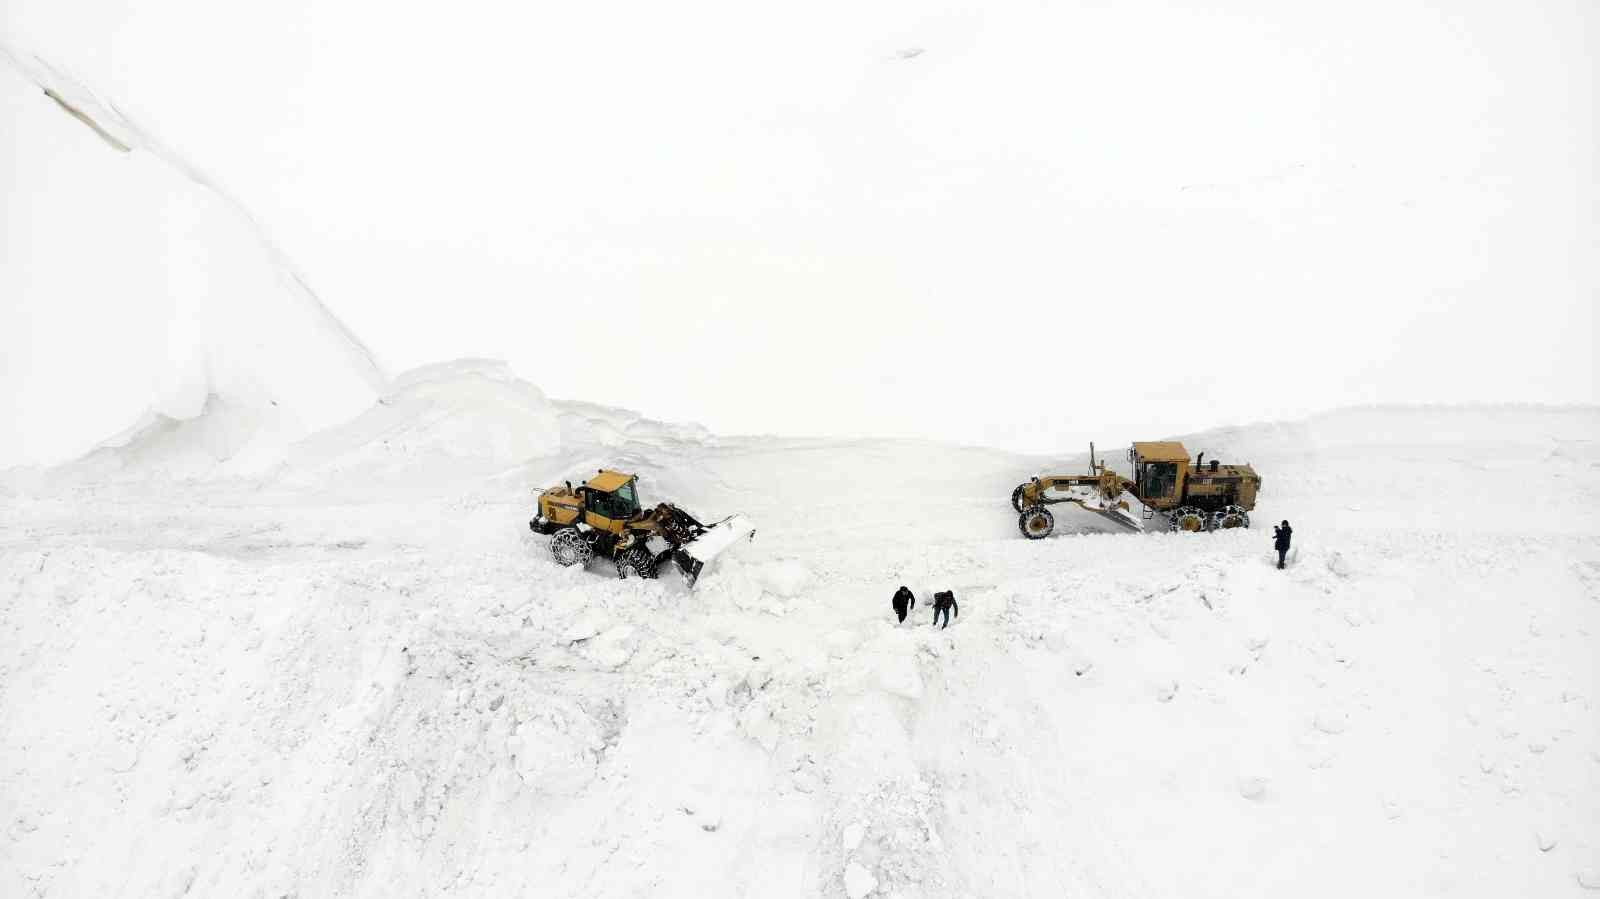 Muş’ta kar kalınlığının 3 metreyi geçtiği bölgede genişletme çalışması başlatıldı #mus